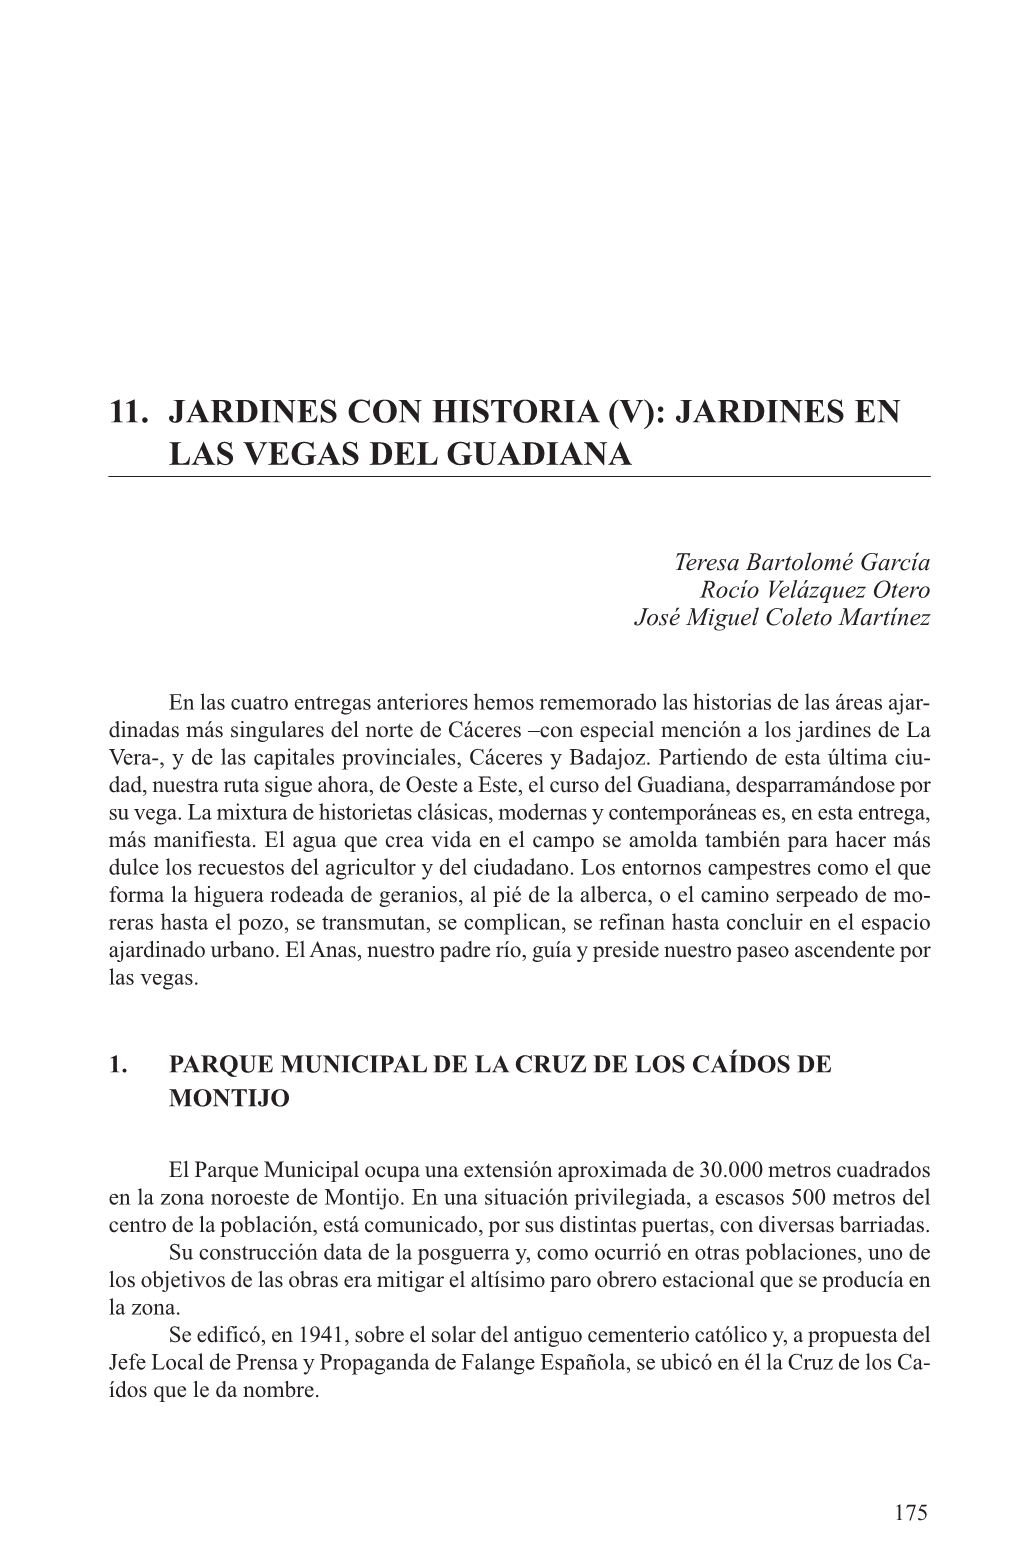 11. Jardines Con Historia (V): Jardines En Las Vegas Del Guadiana